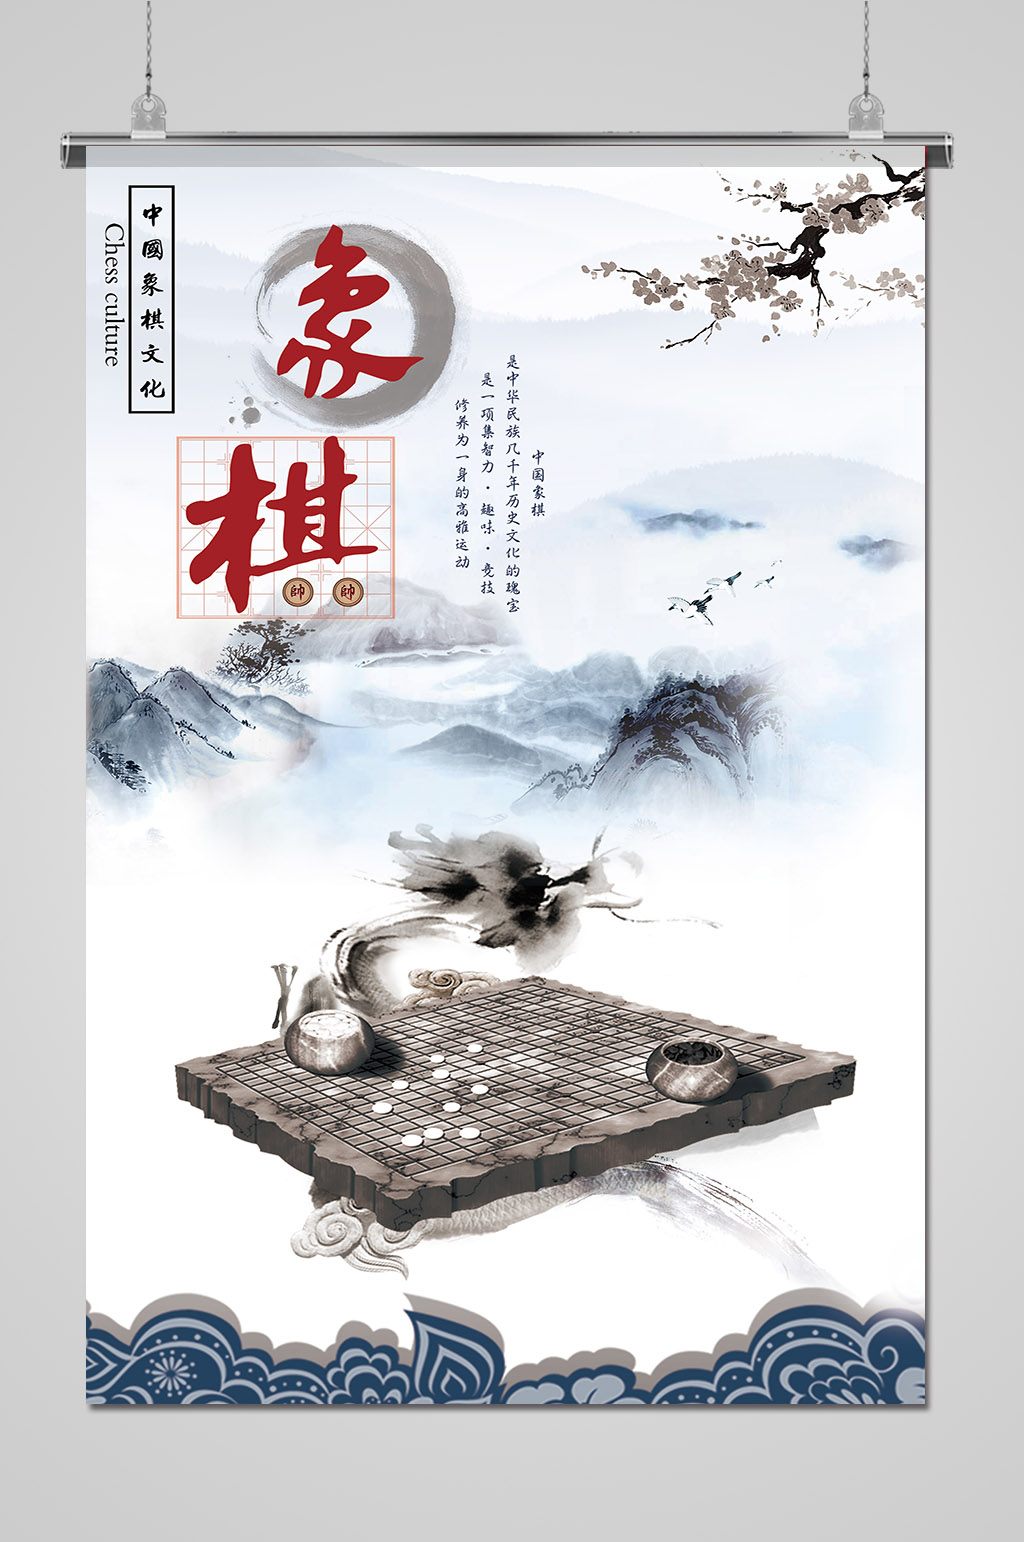 中国风传统中国象棋海报立即下载立即下载古风中国文化象棋海报立即